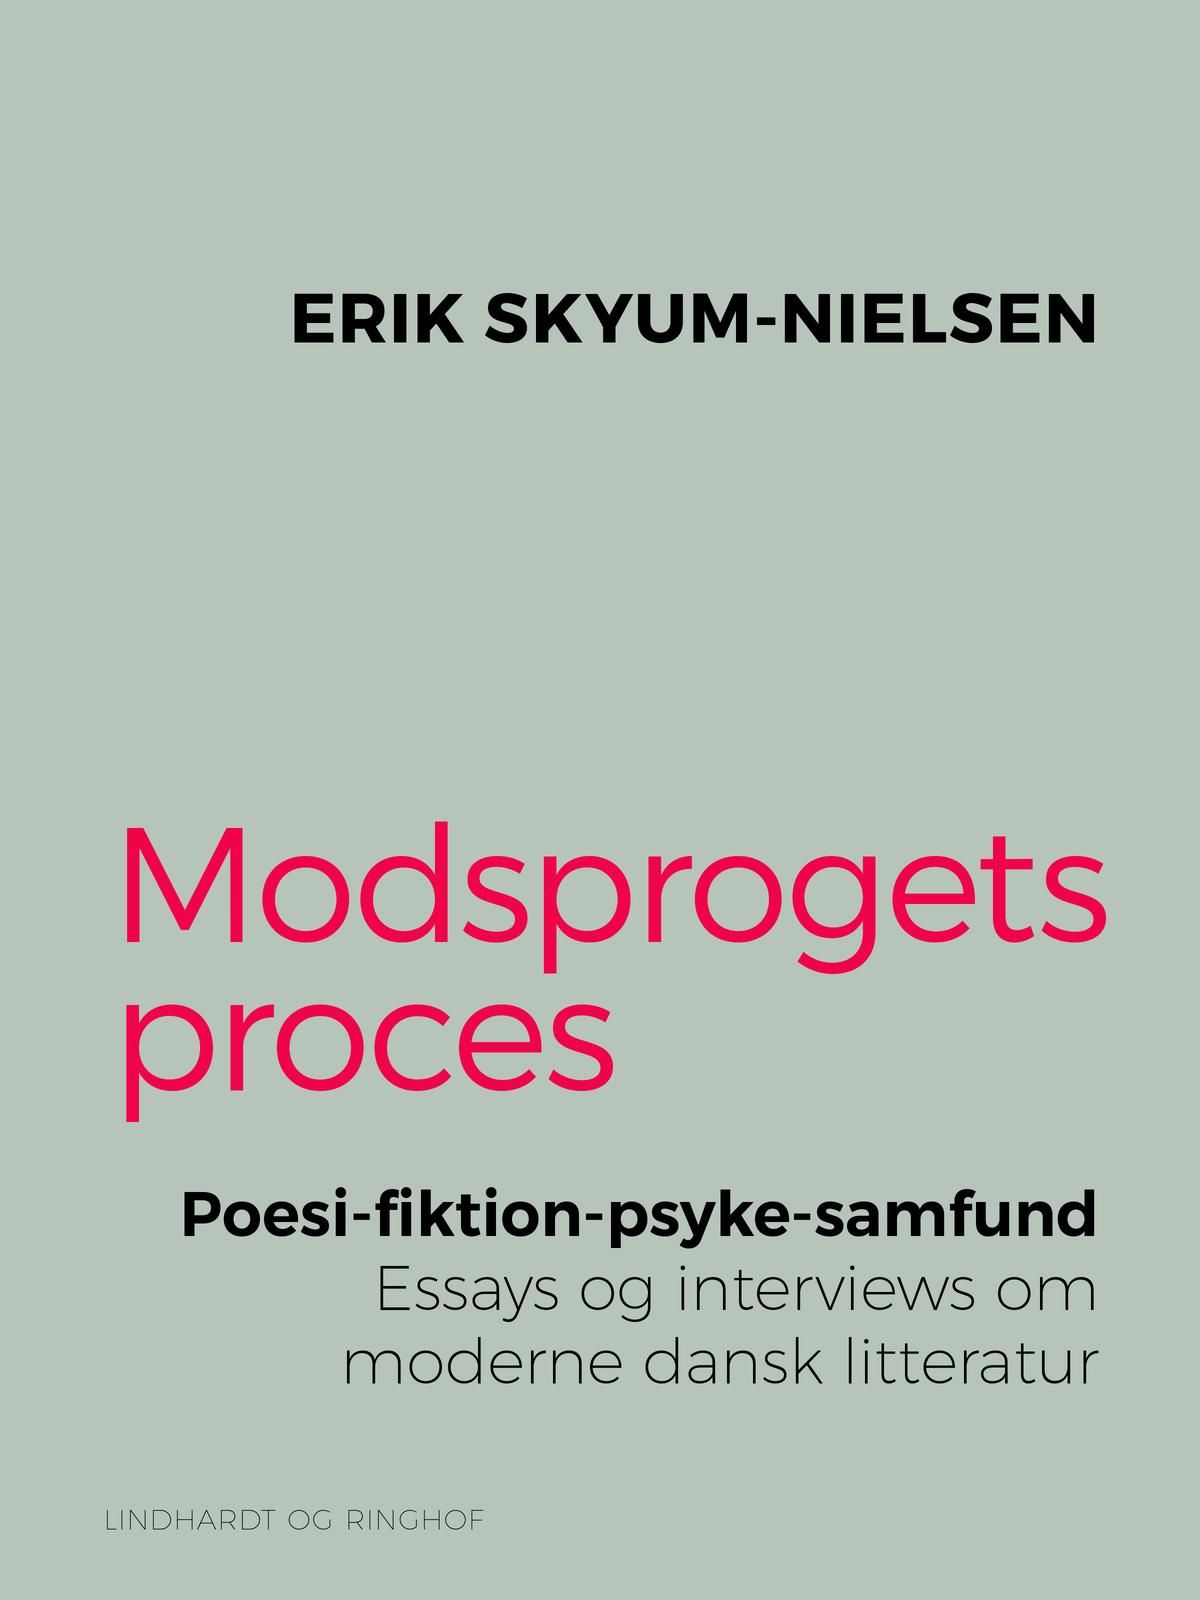 Modsprogets proces. Poesi - fiktion - psyke - samfund. Essays og interviews om moderne dansk litteratur, eBook by Erik Skyum-Nielsen